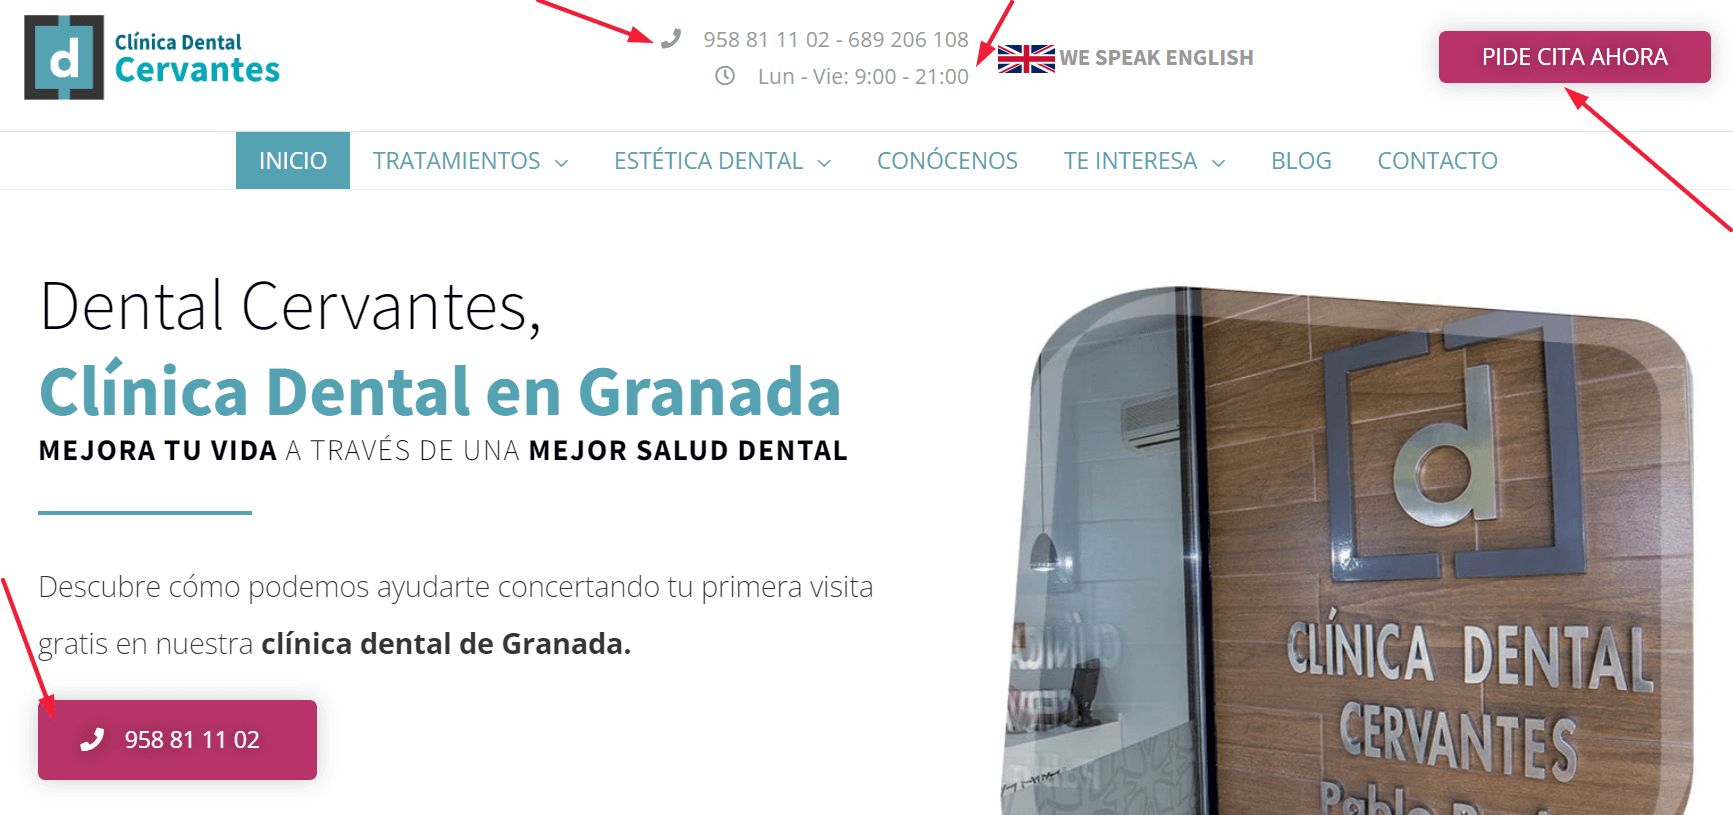 Anuncio de una clínica dental llamada Cervantes que te incluye el teléfono, el horario, un botón para poder llamar directamente y otro botón para pedir cita. El anuncio está acompañado de una imagen y el eslogan de la clínica dental Cervantes.